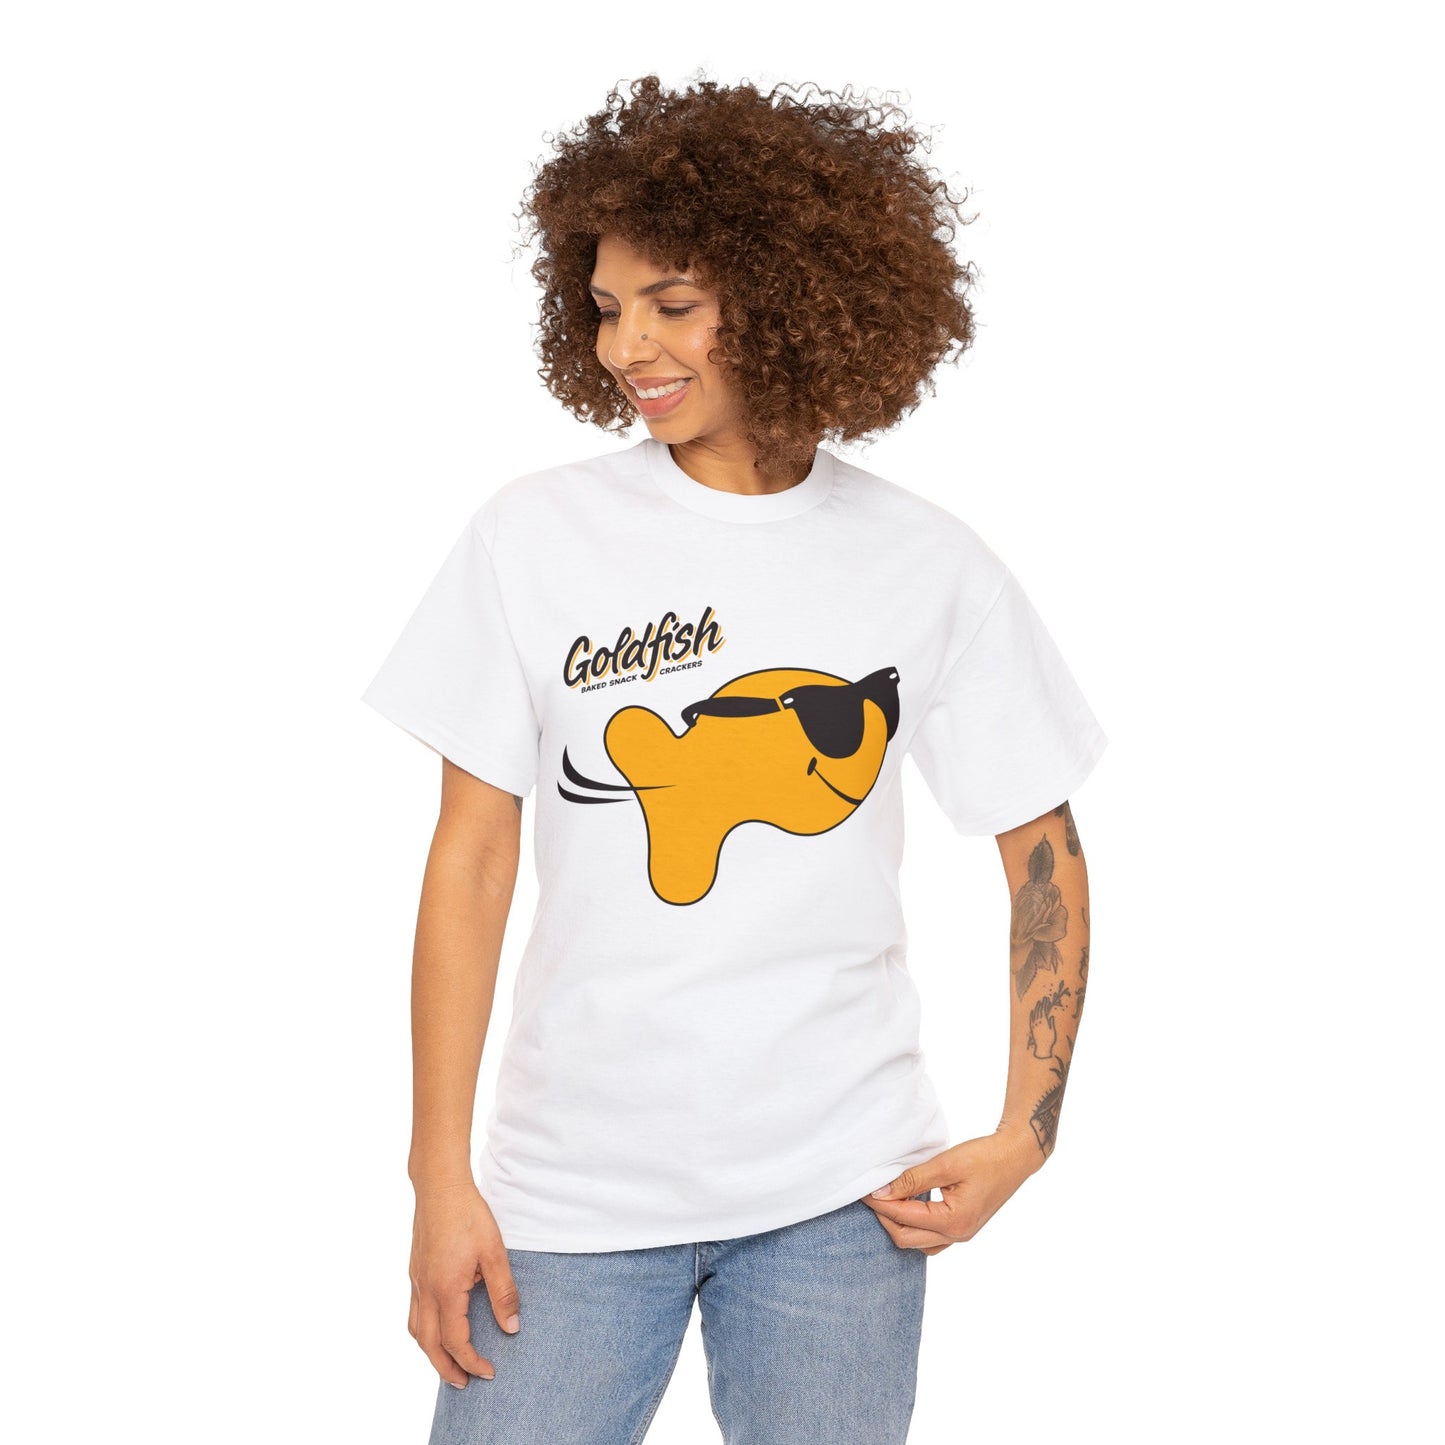 Goldfish Snack Cracker T-shirt for Sale